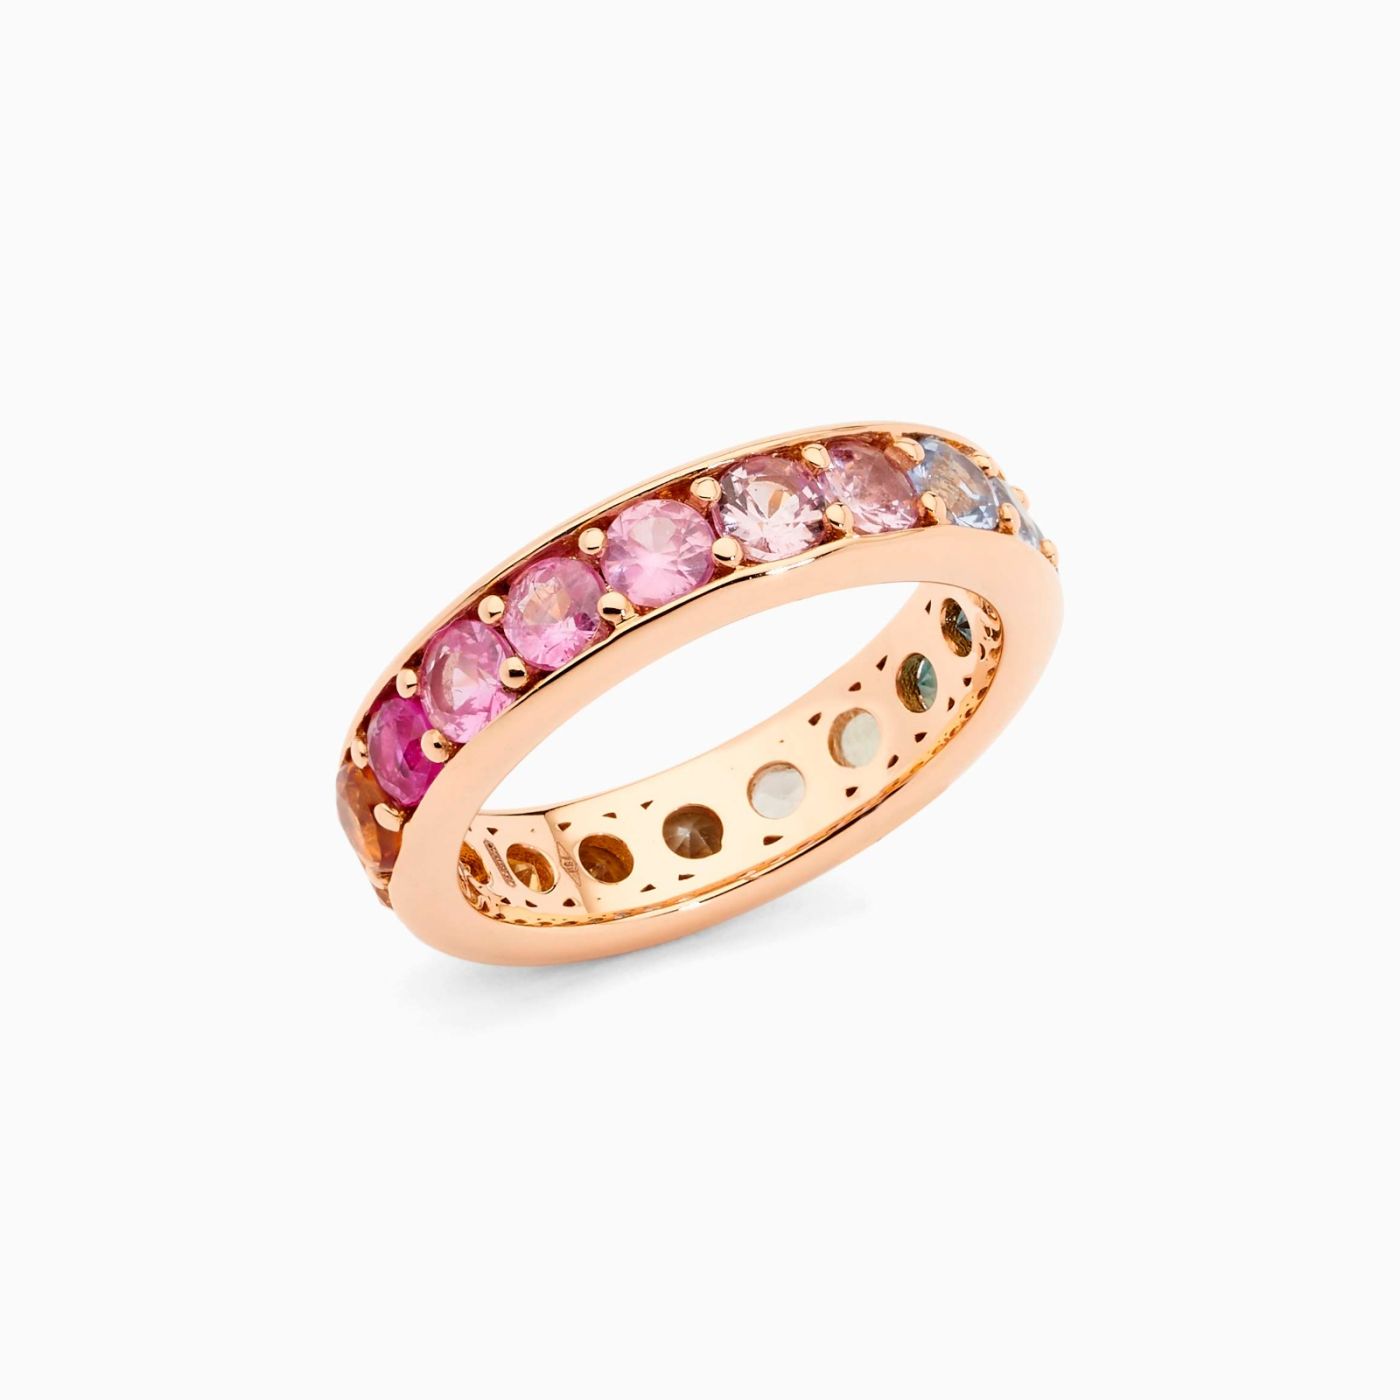 Anillo alianza railes de oro rosa con zafiros multicolor talla brillante